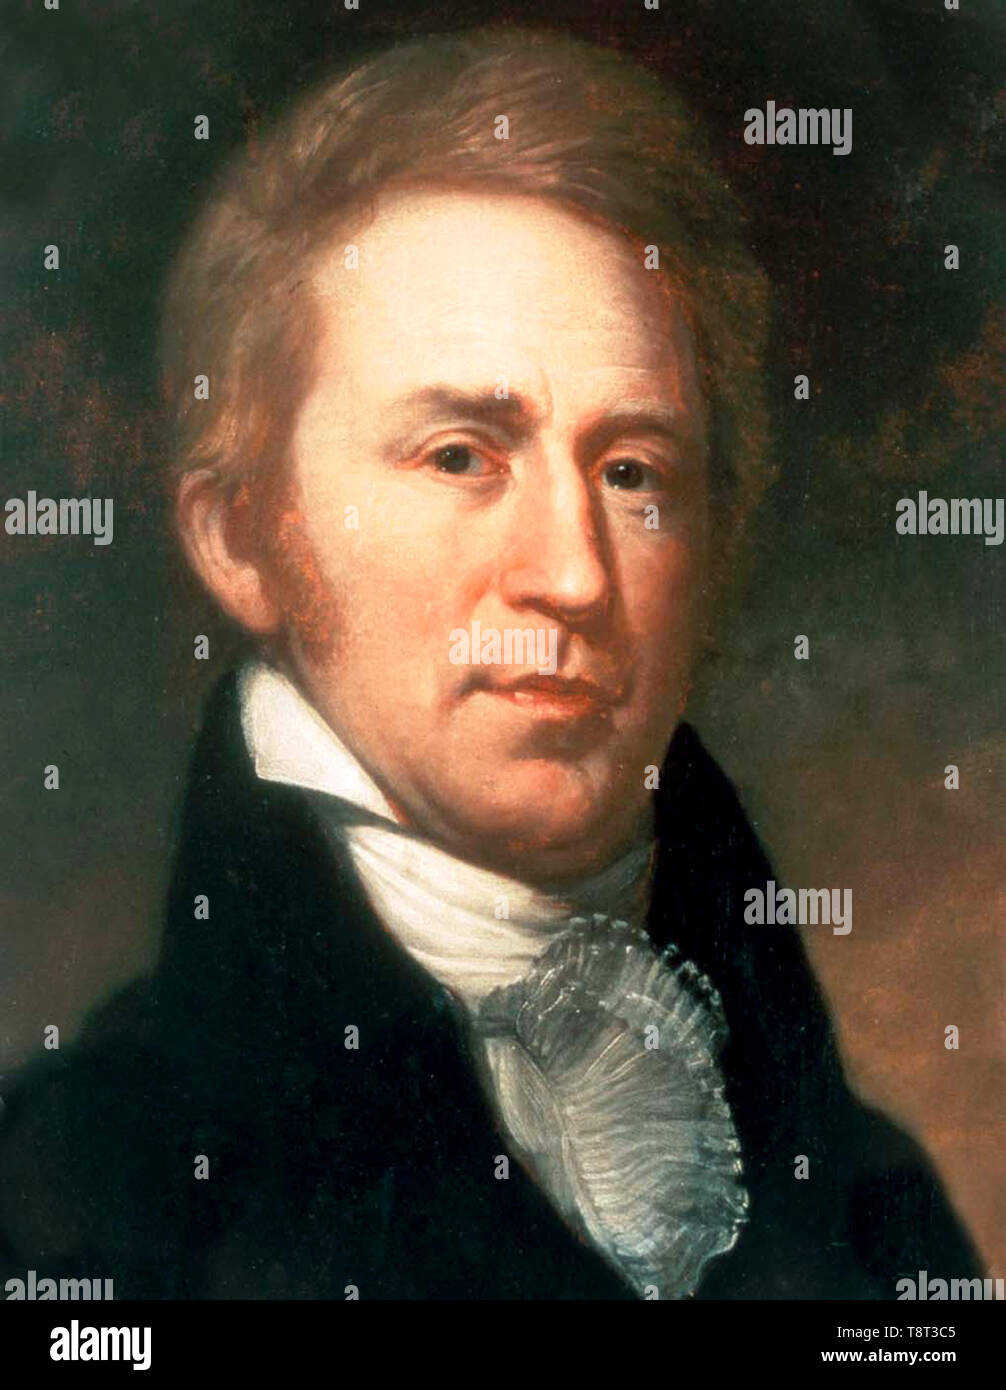 William Clark (1770 - 1838), explorateur américain. Peinture de Charles Willson Peale Banque D'Images